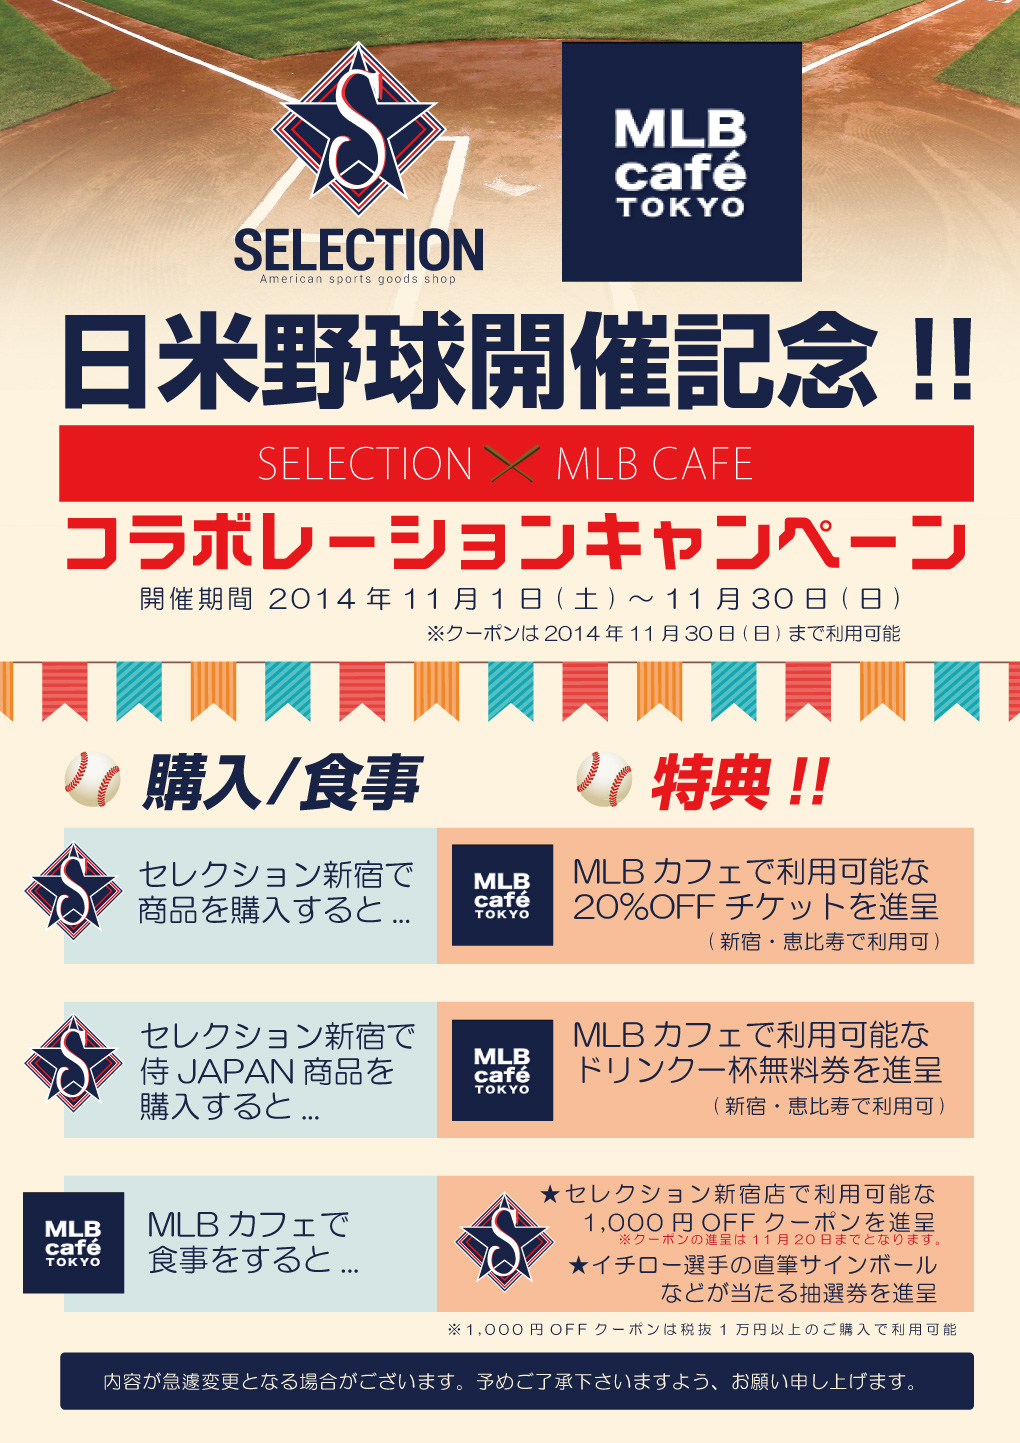 セレクション・MLBカフェ コラボーレションキャンペーン